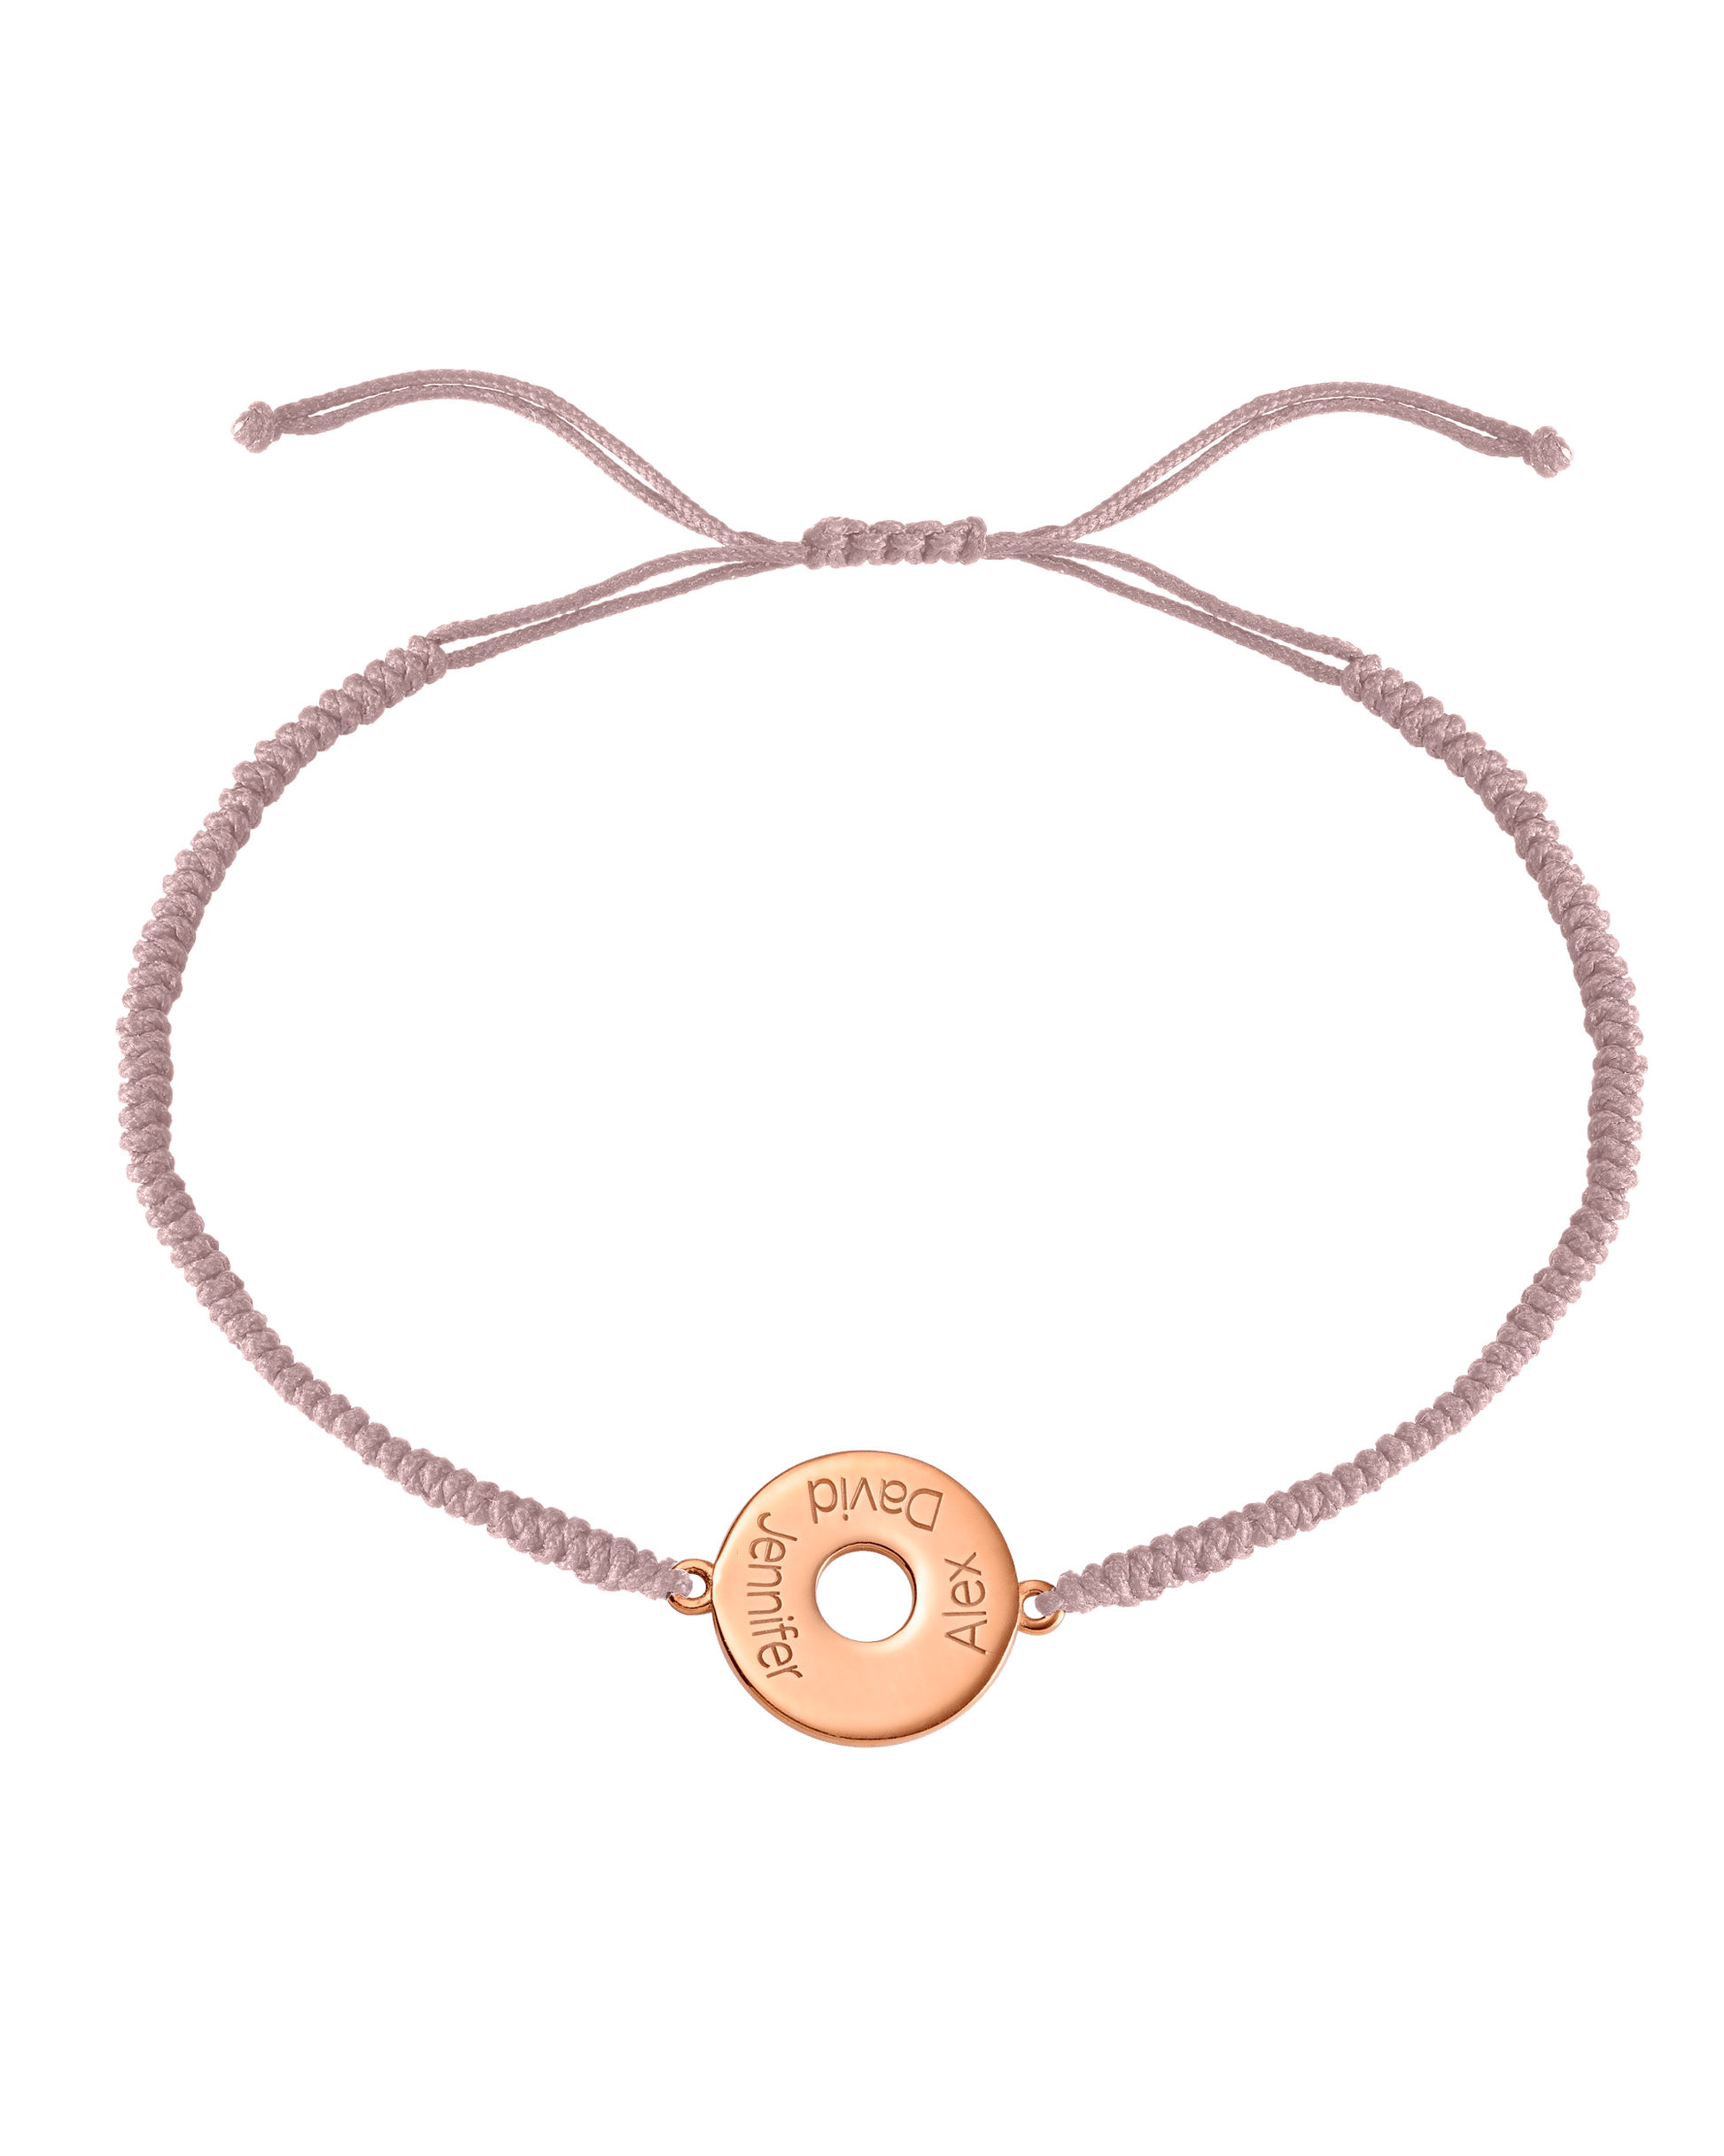 Donut Cord Bracelet - 18K Rose Vermeil Bracelets magal-dev Light Pink 1 Names Adjustable from 4" to 9"